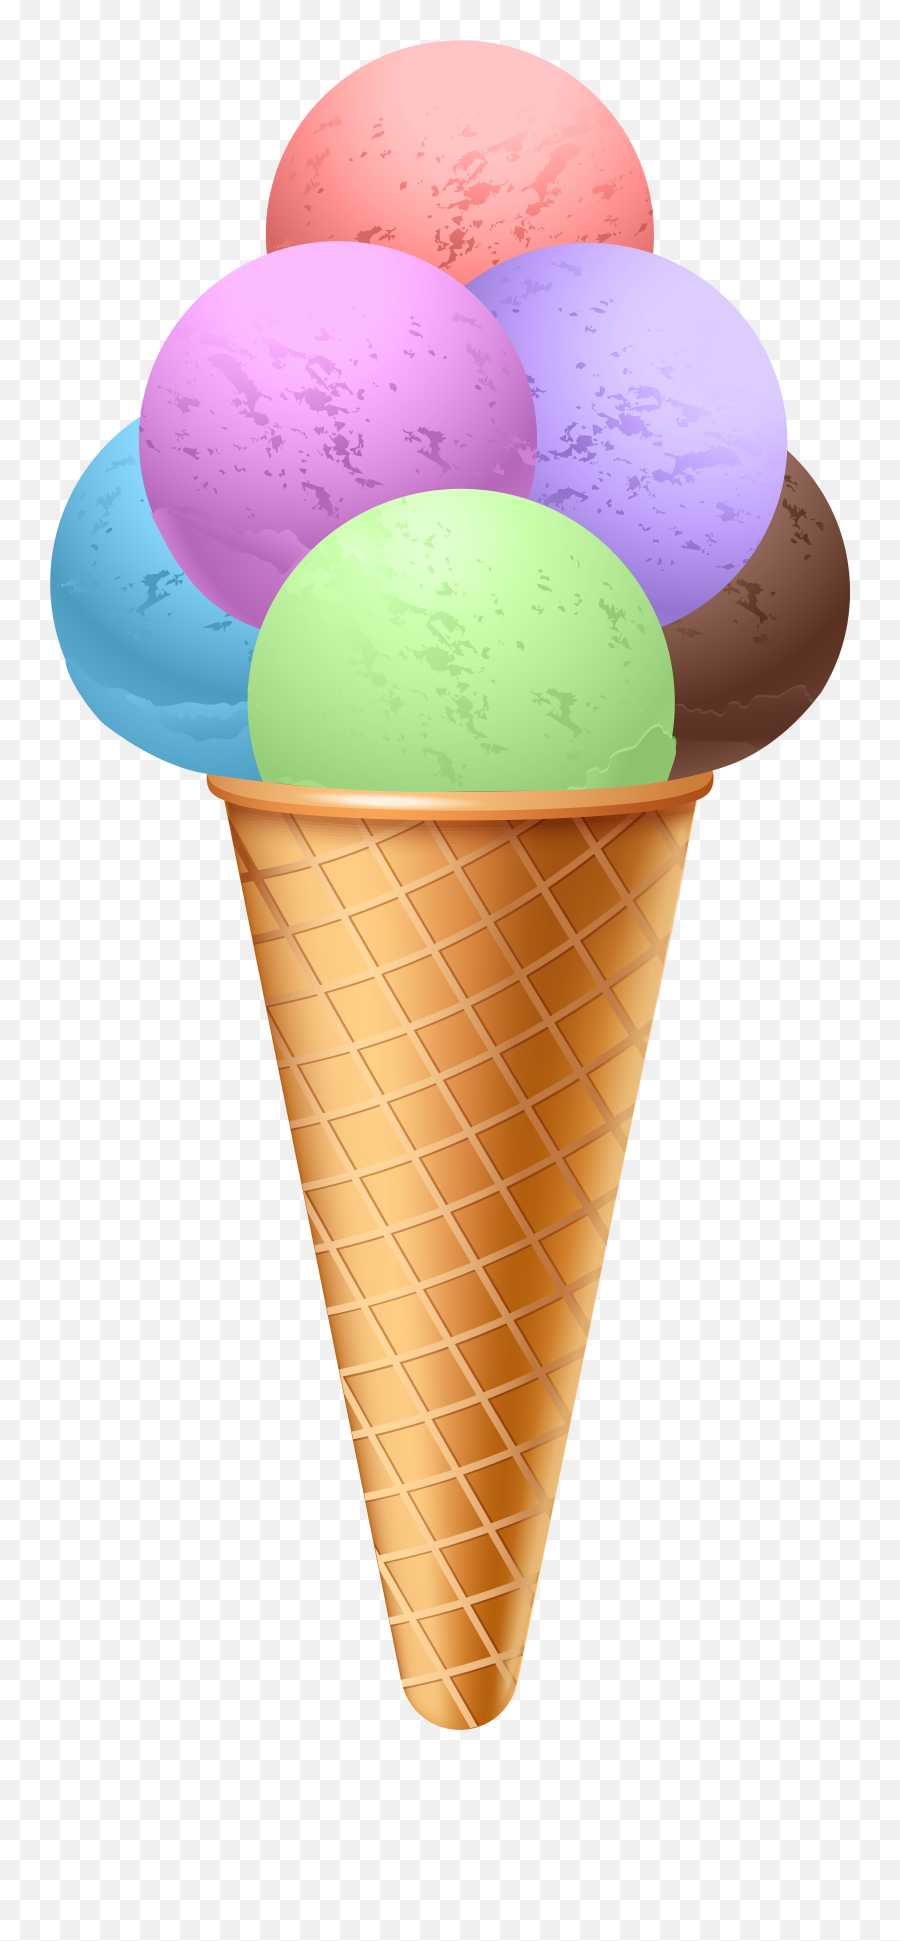 Ice Cream Cone Png Transparent - Clip Art Cone Ice Cream,Ice Cream Cone Transparent Background